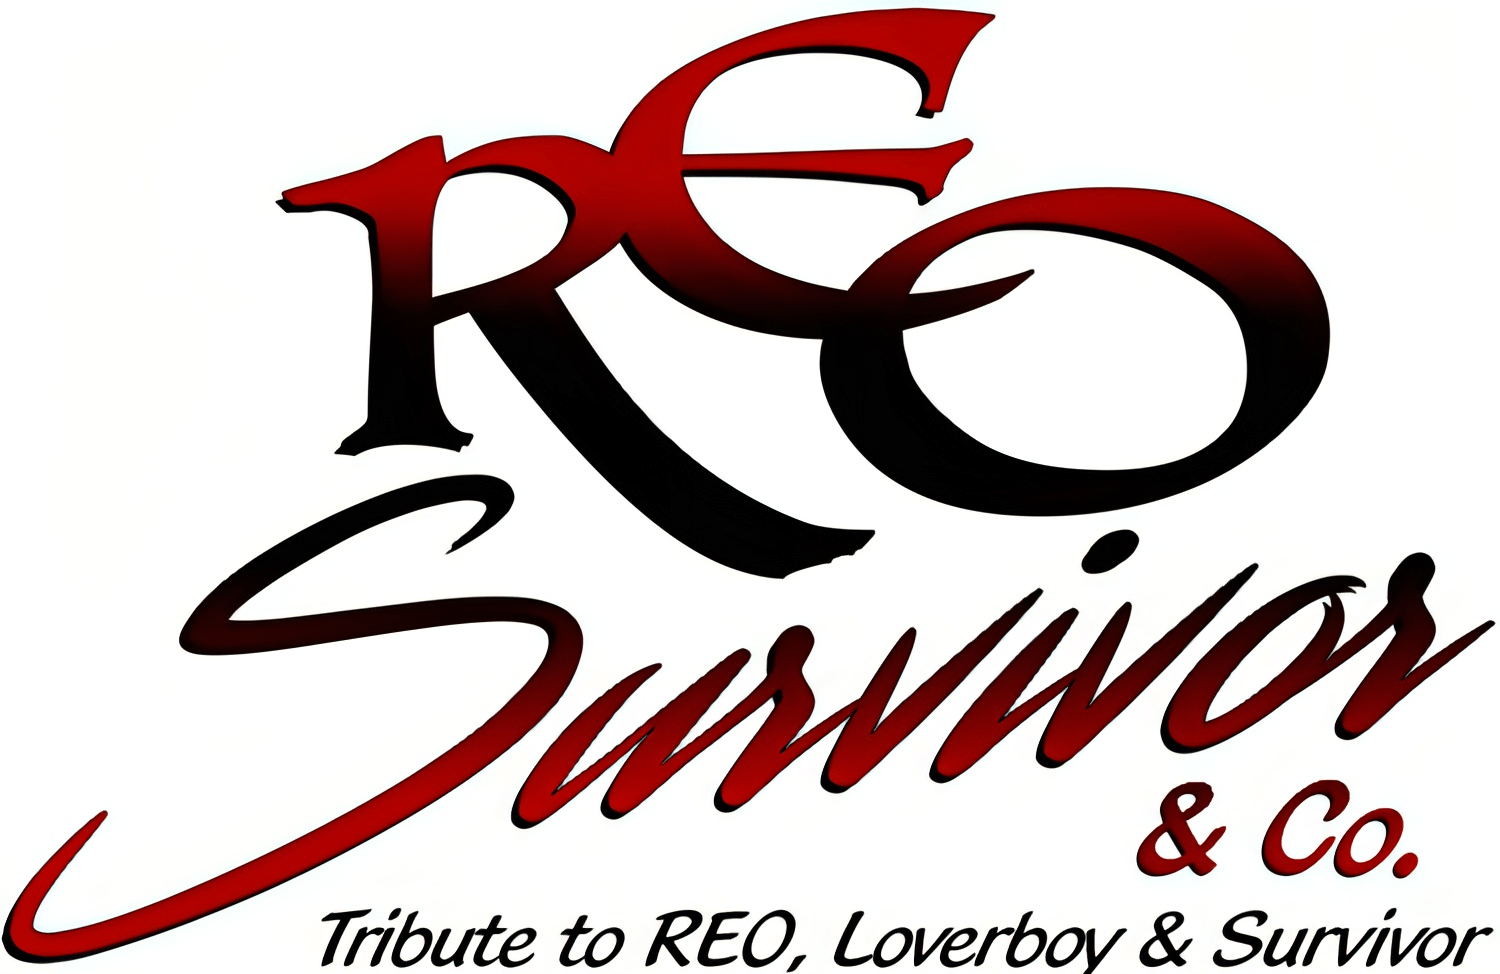 REO Survivor & Co